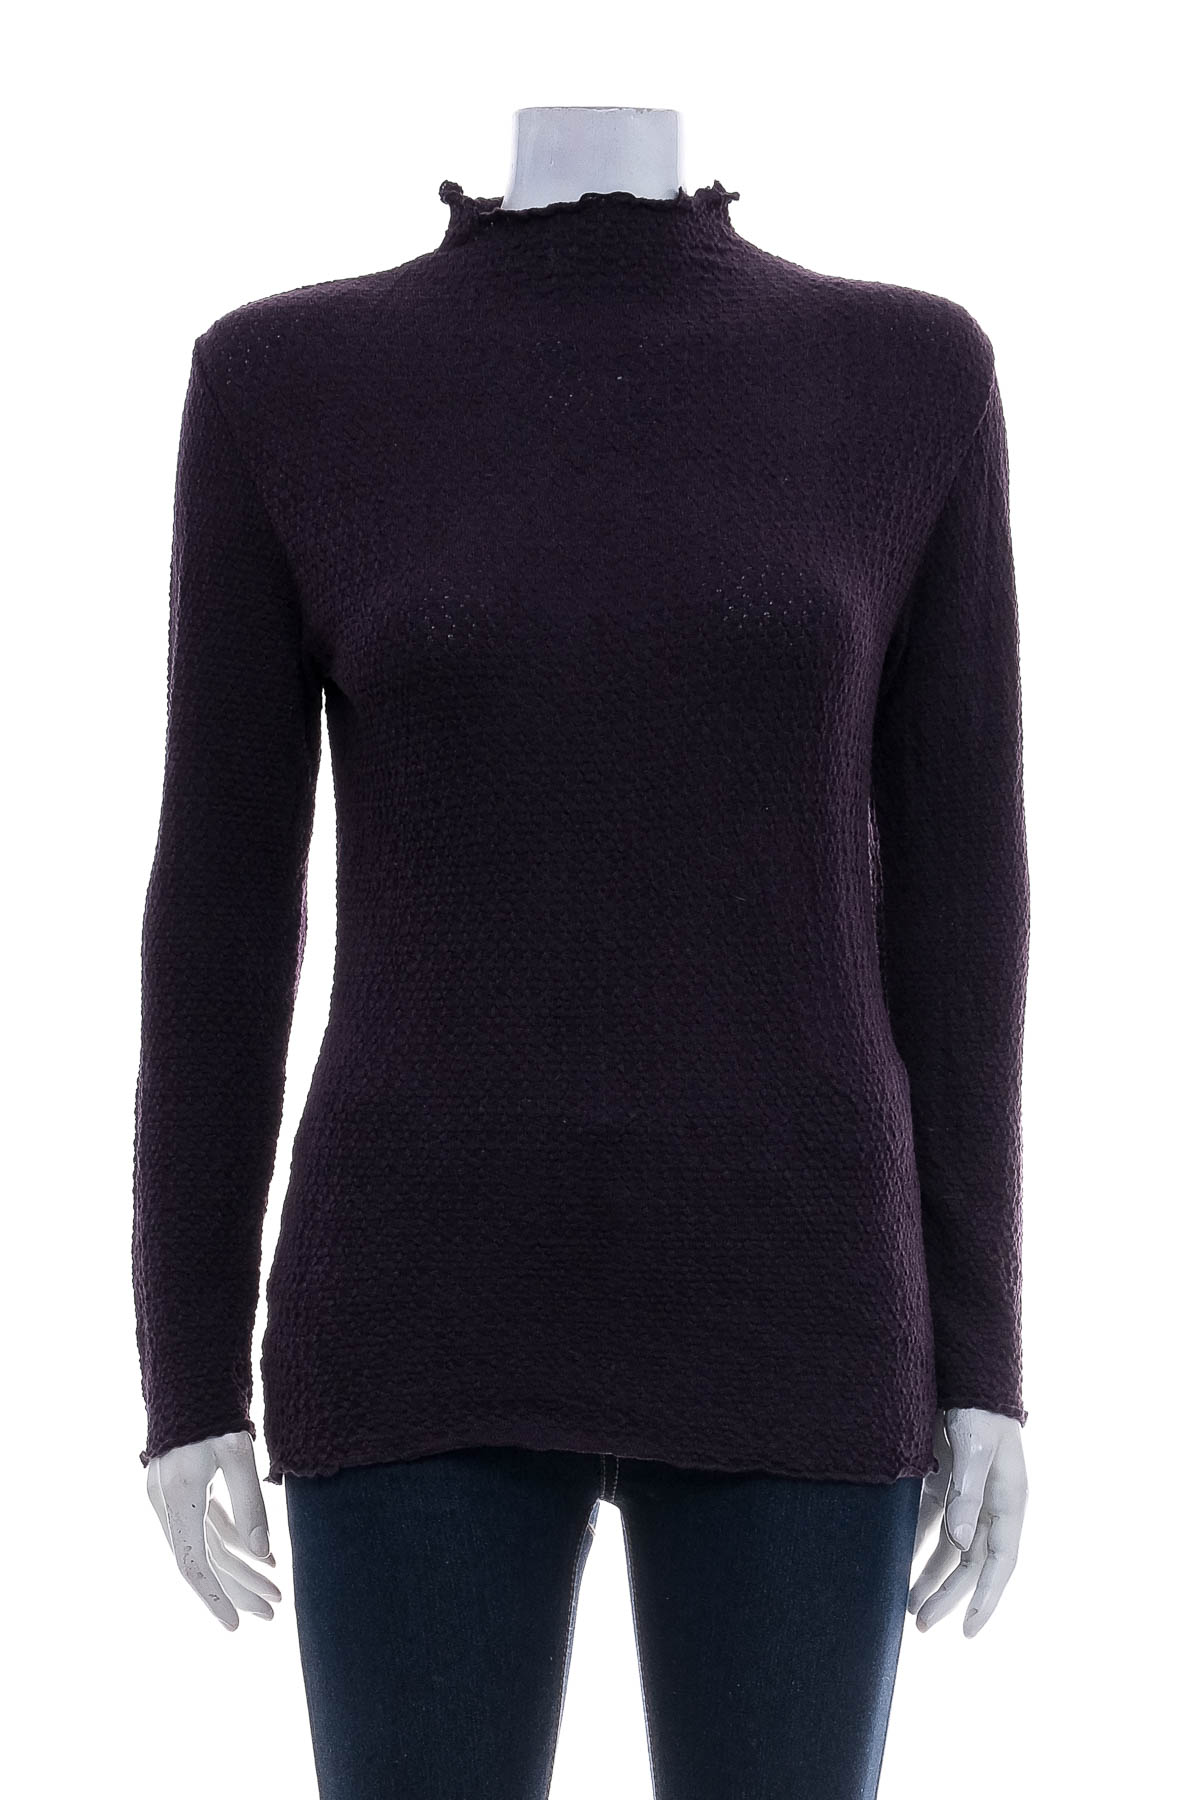 Women's sweater - Mary Grace - 0